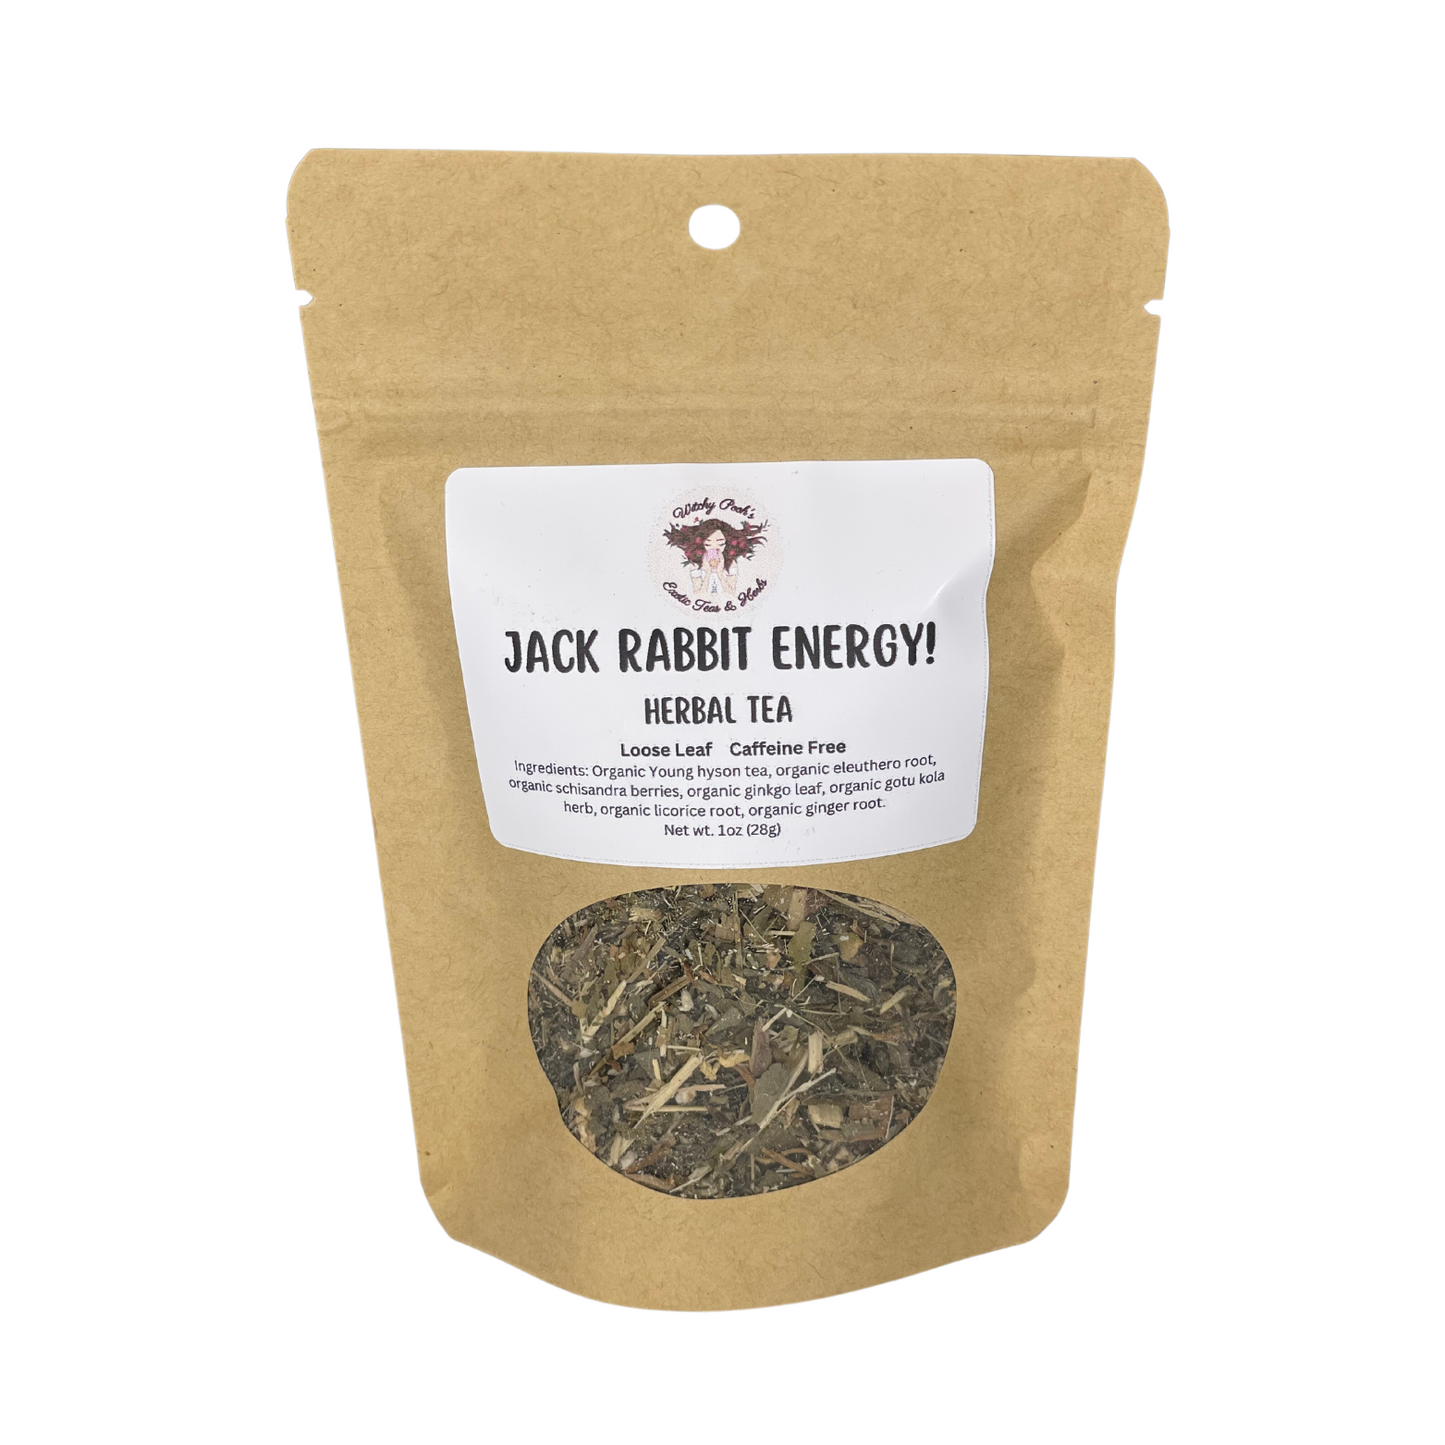 Jack Rabbit Energy! Tea, Herbal Tea, Loose Leaf Tea, Functional Tea, Caffeine Free Tea, Sugar Free Tea